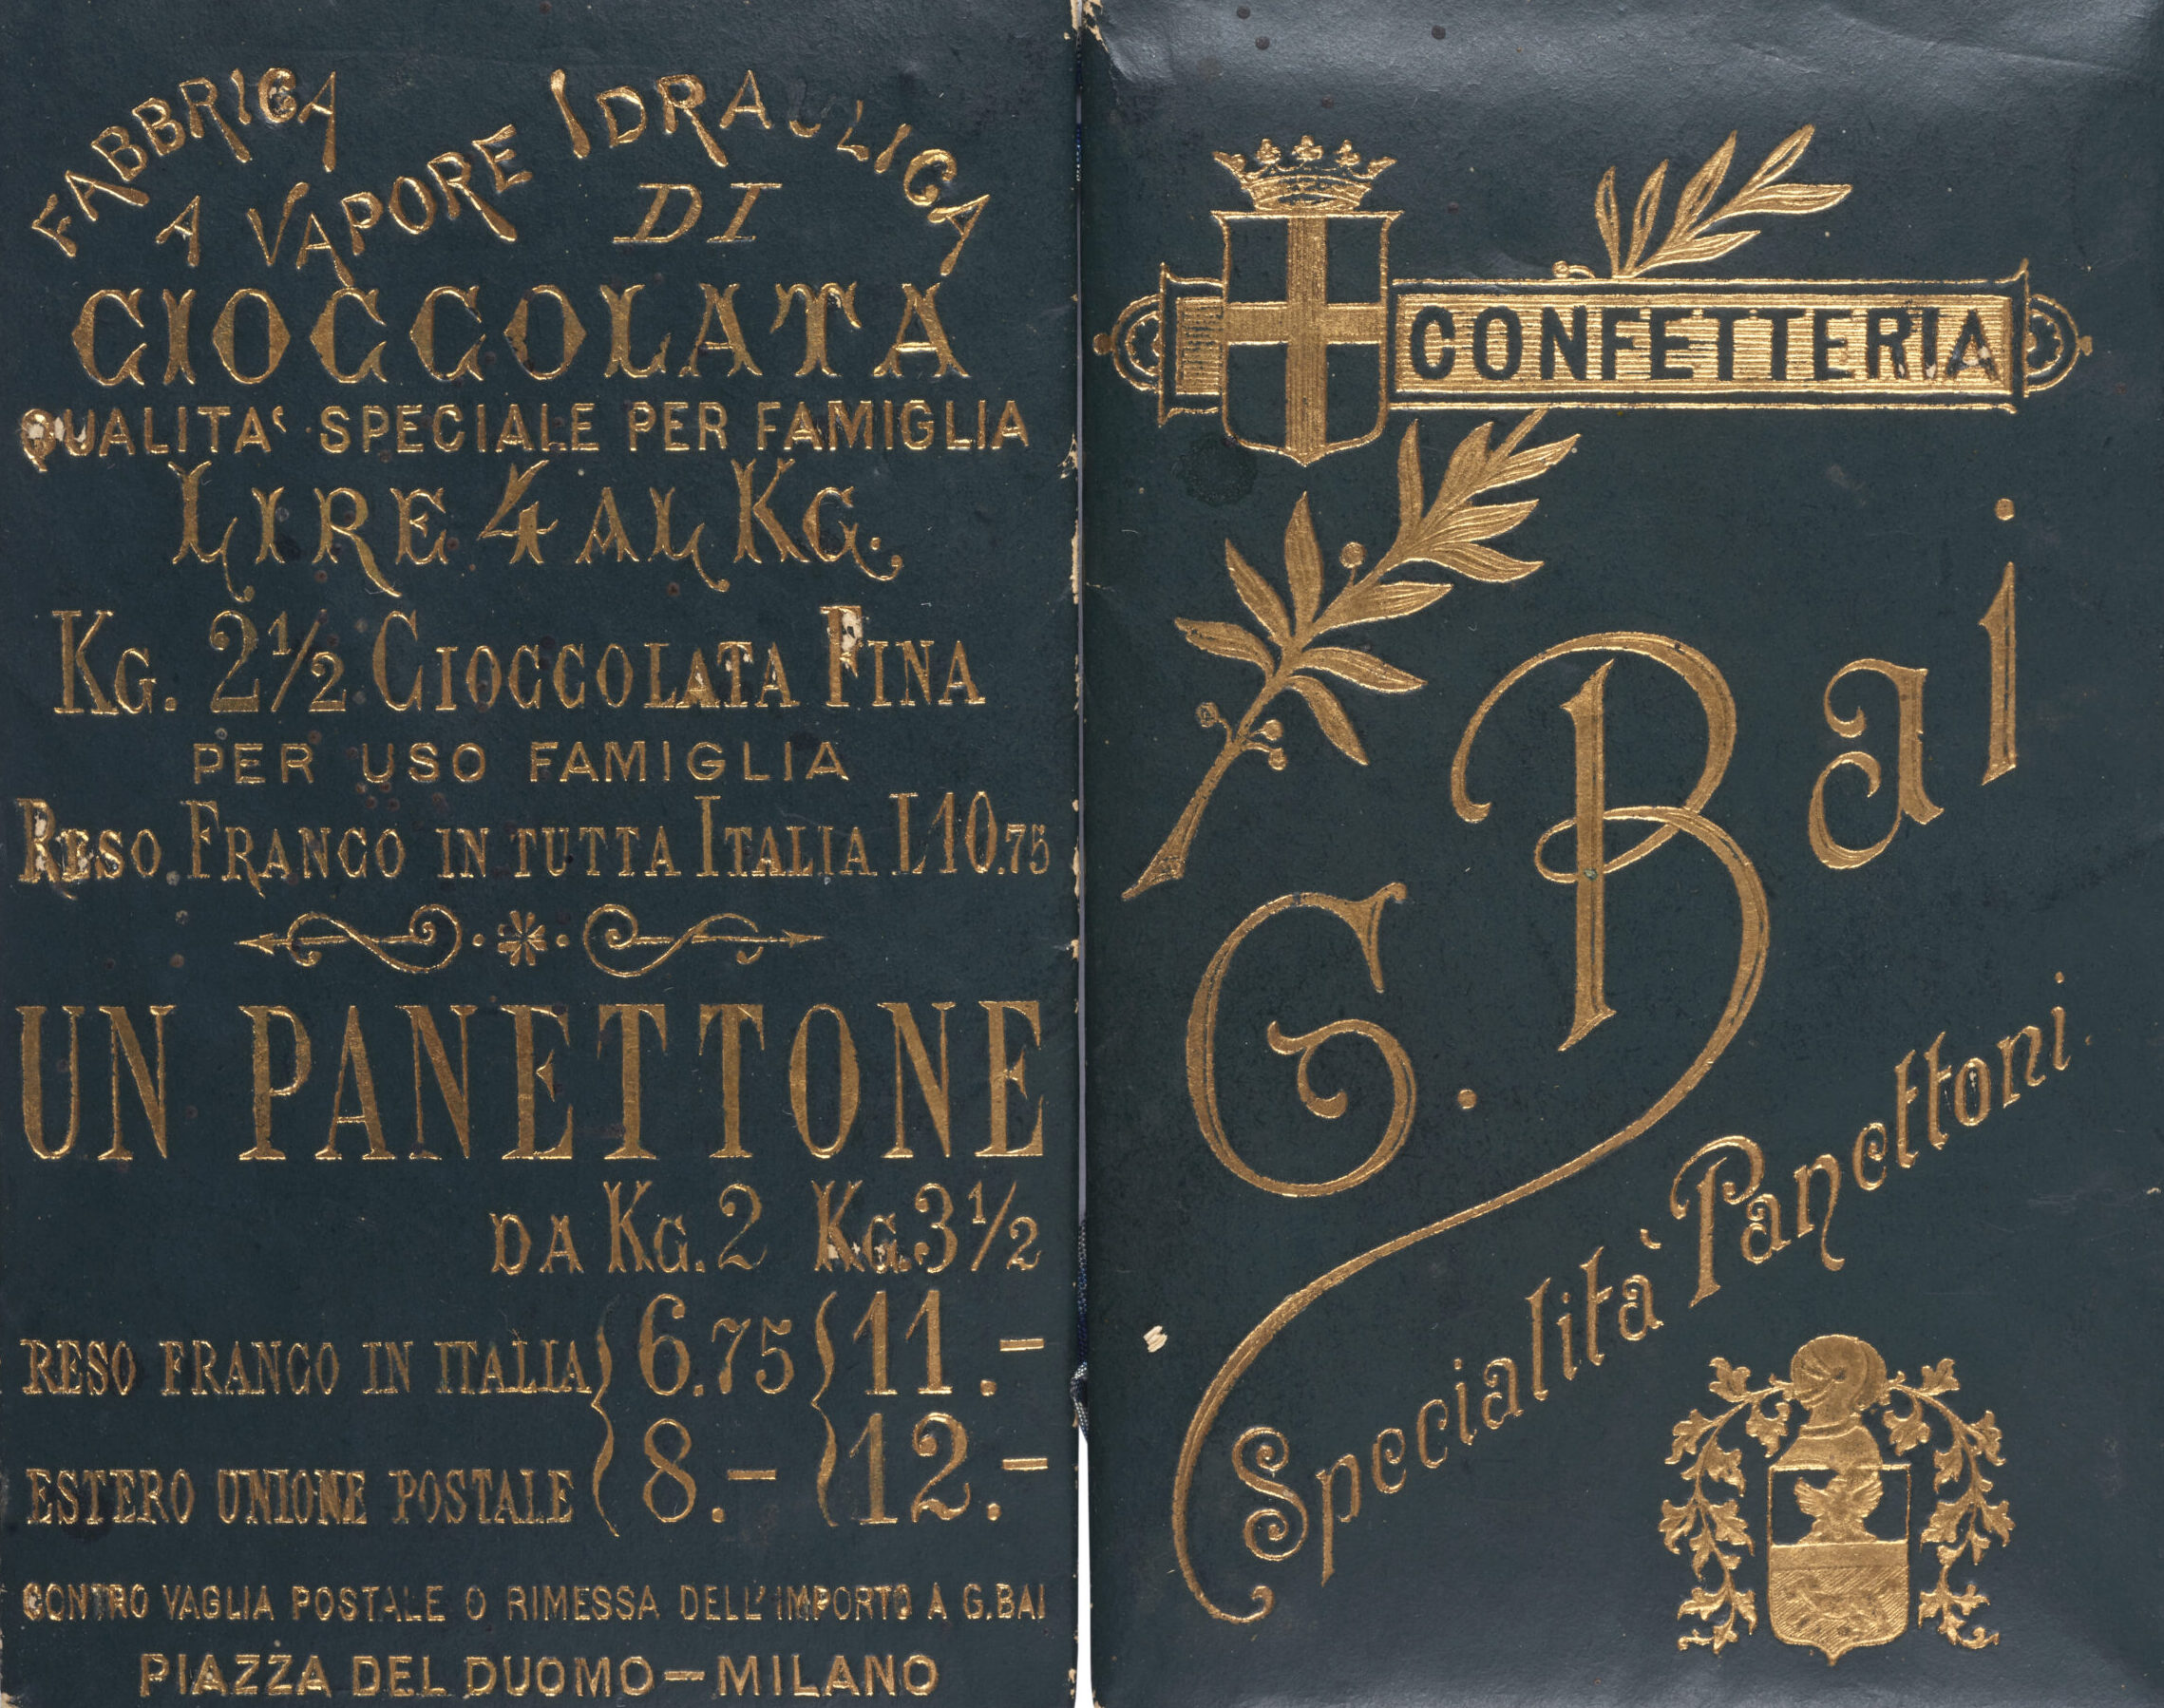 Copertina calendarietto 1894 - Confetteria Baj Specialità Panettoni